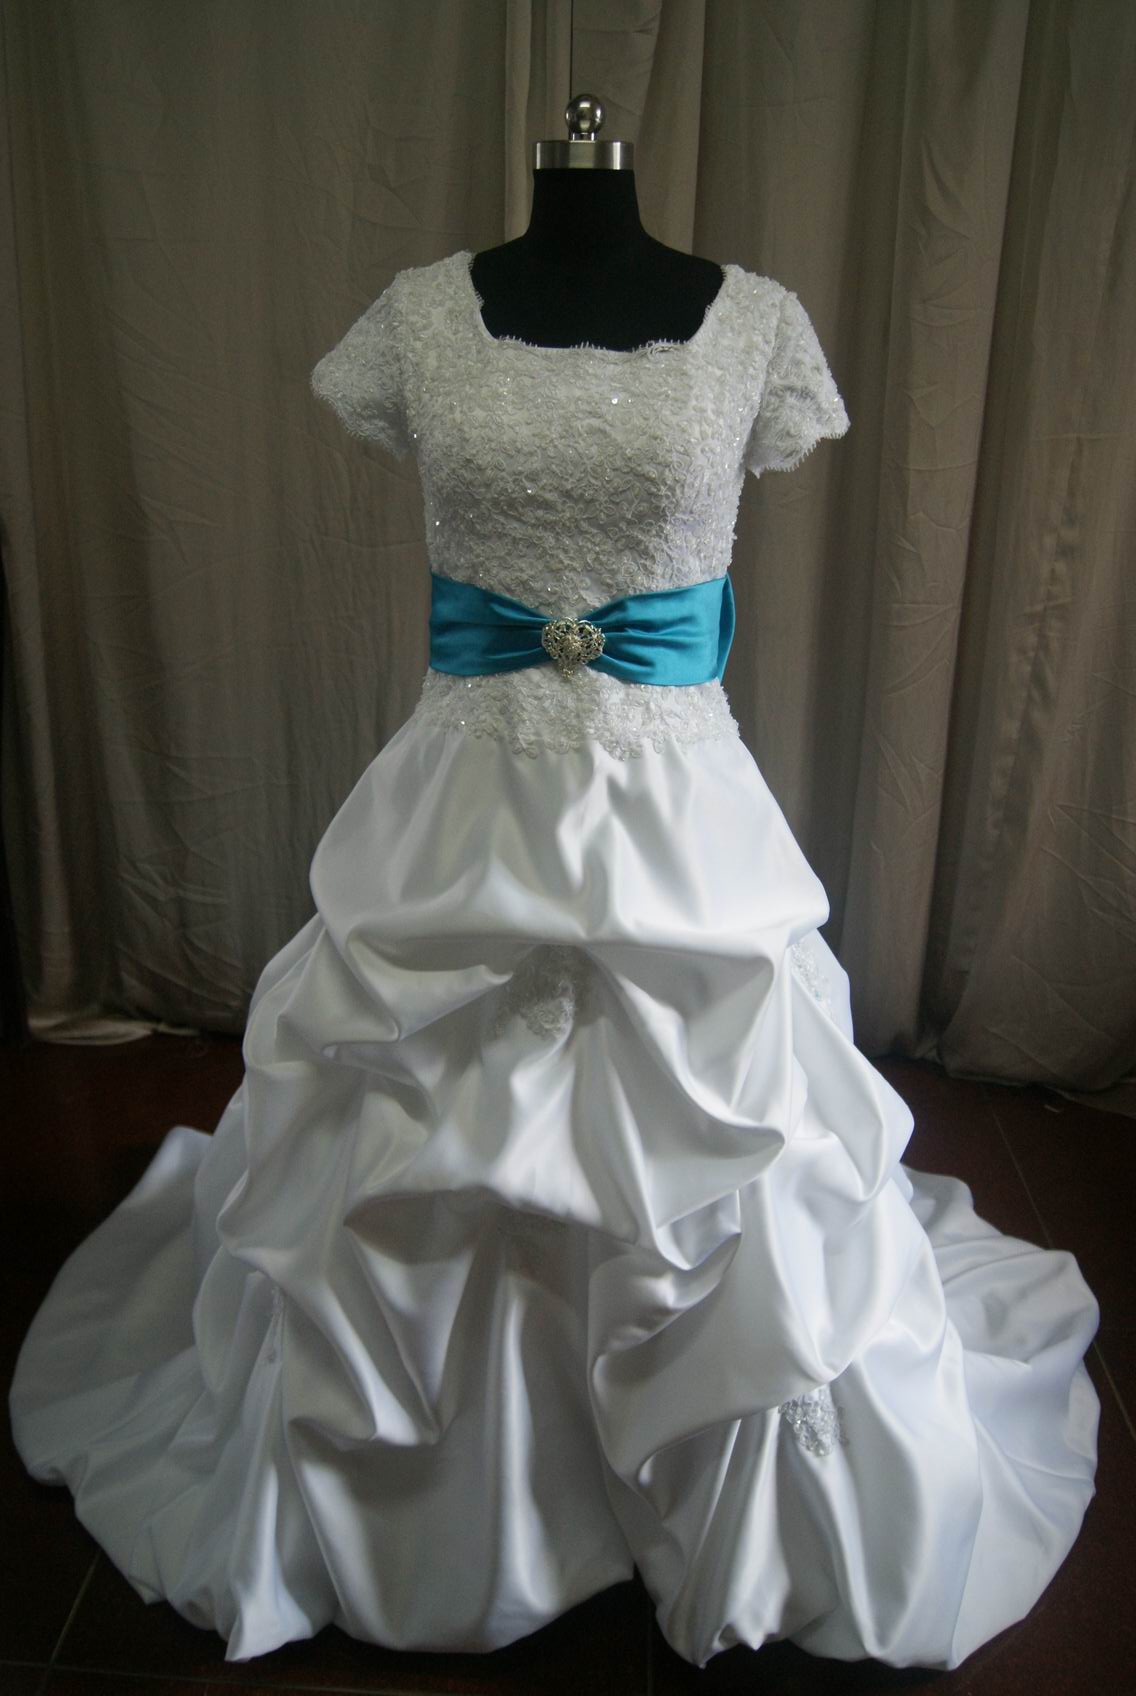 short sleeve wedding dress with turquoise sash